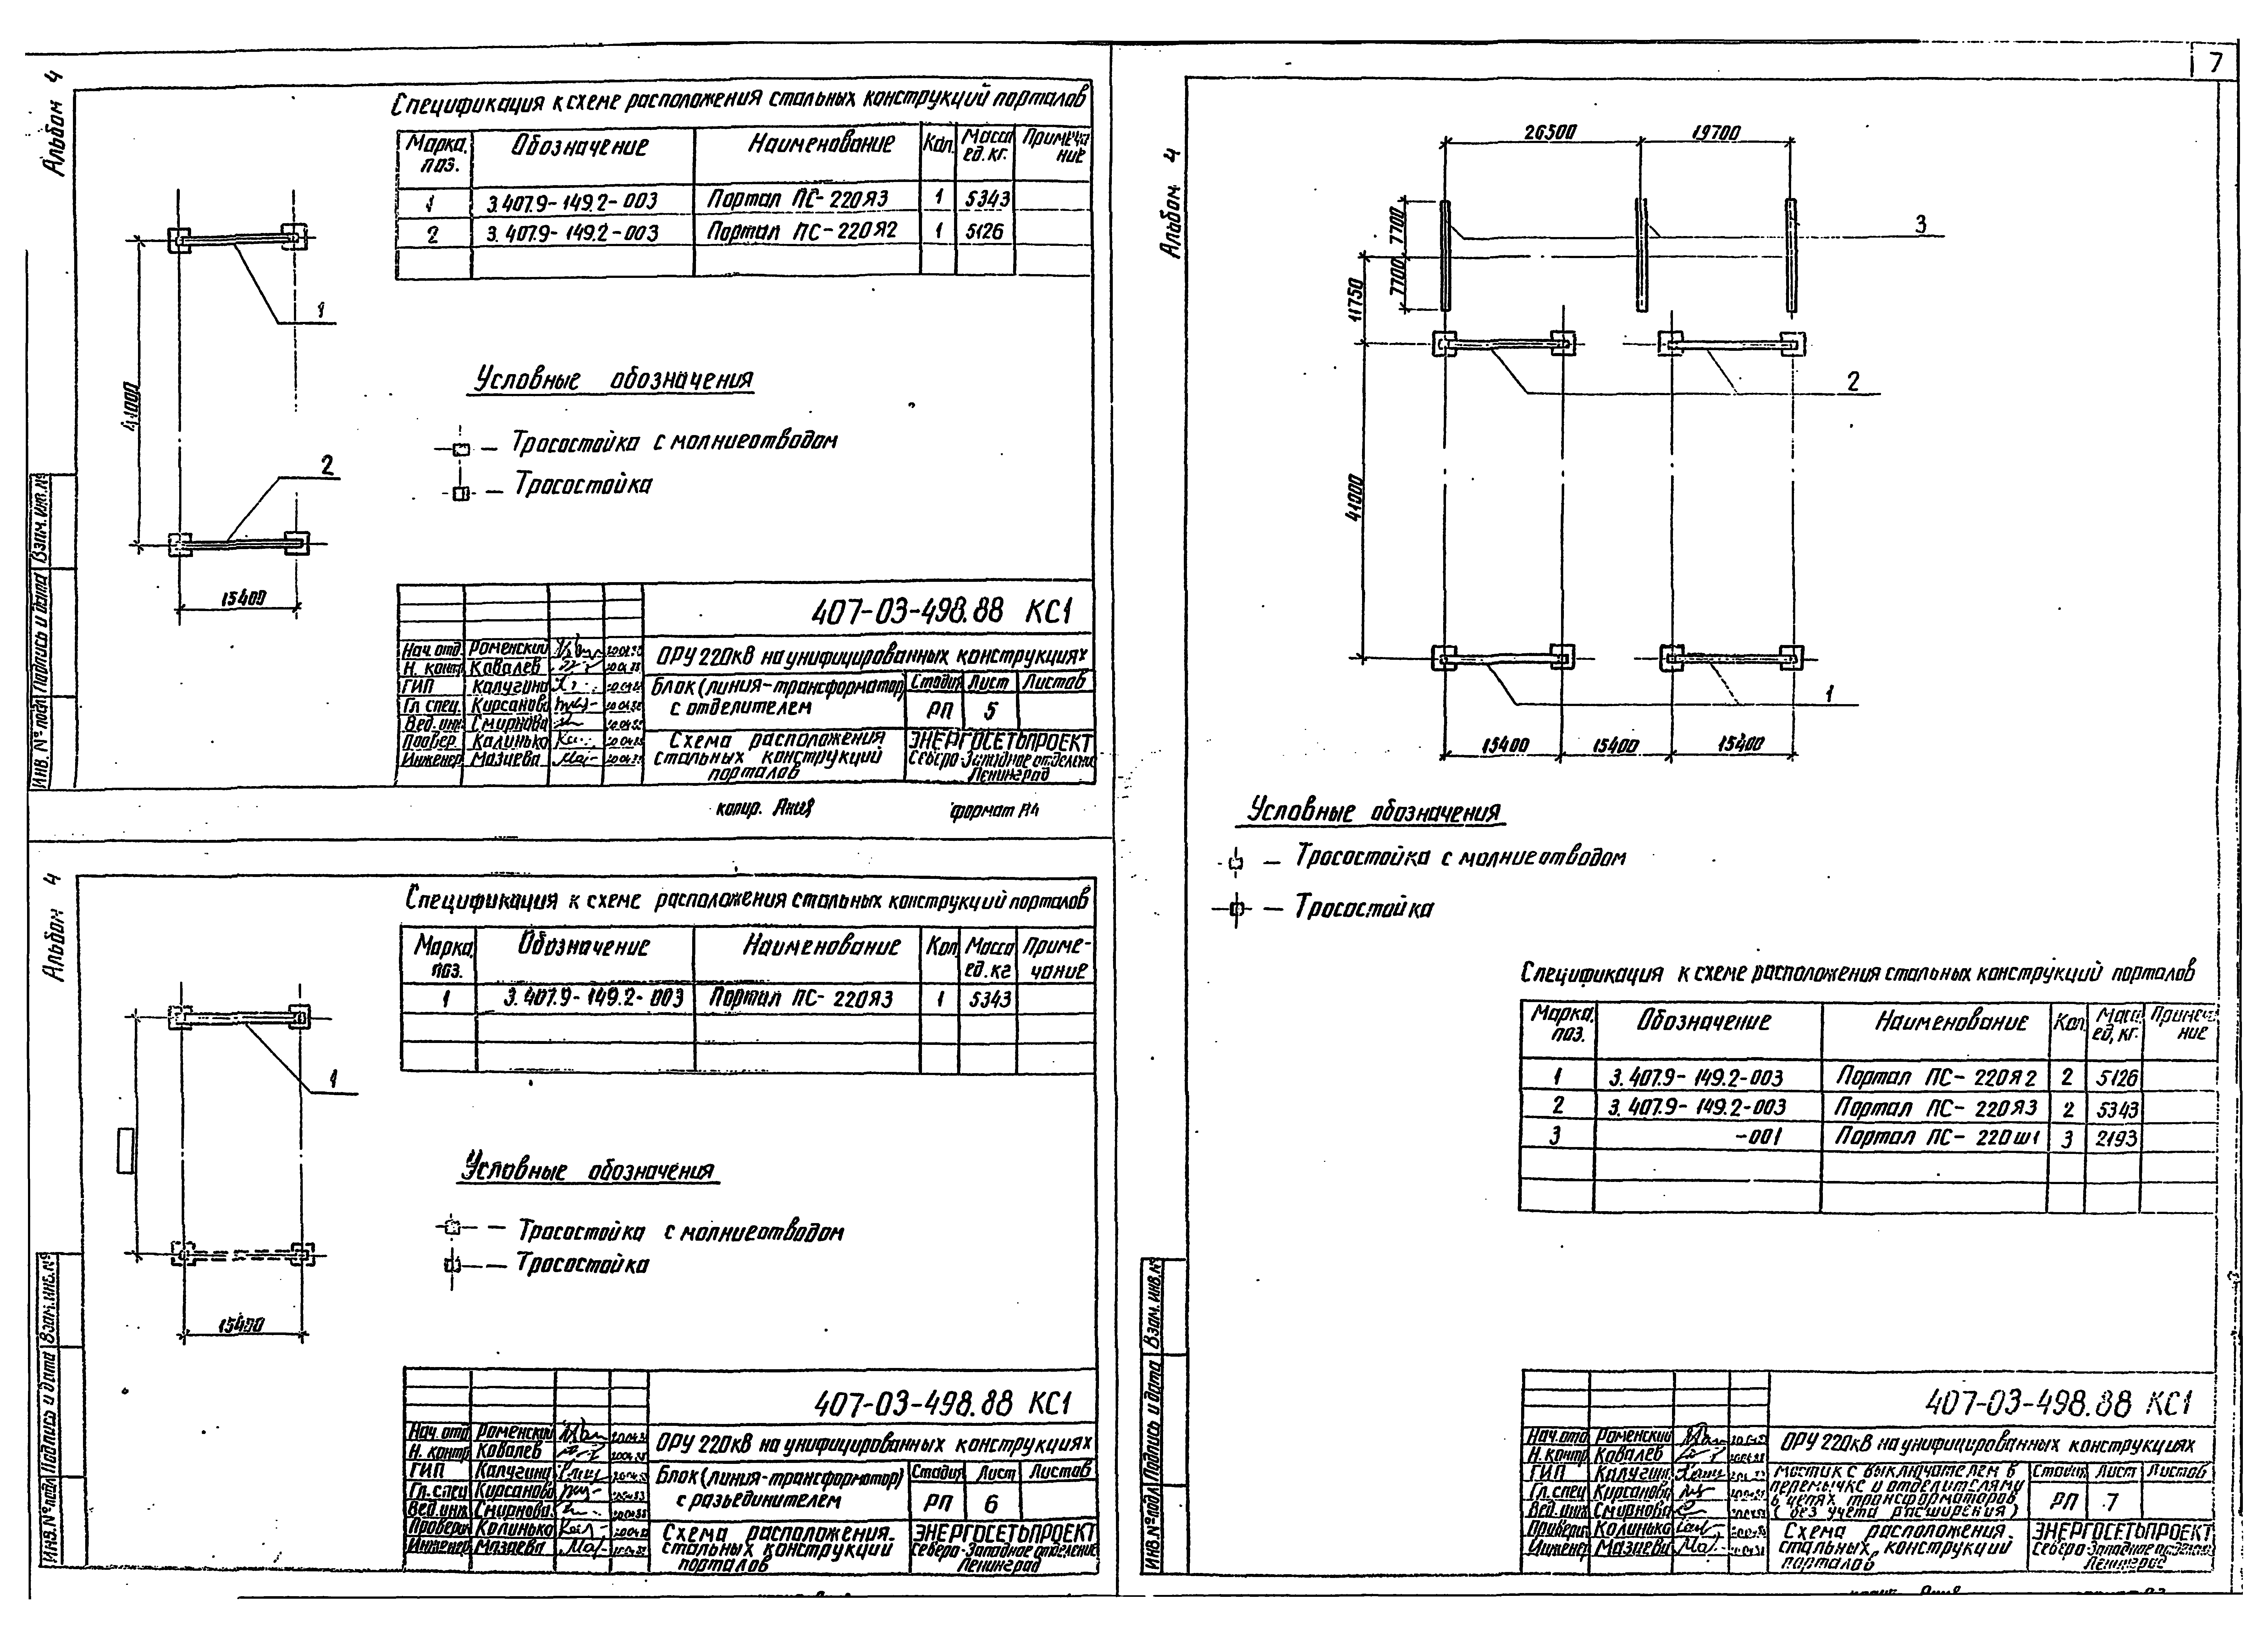 Типовые материалы для проектирования 407-03-498.88